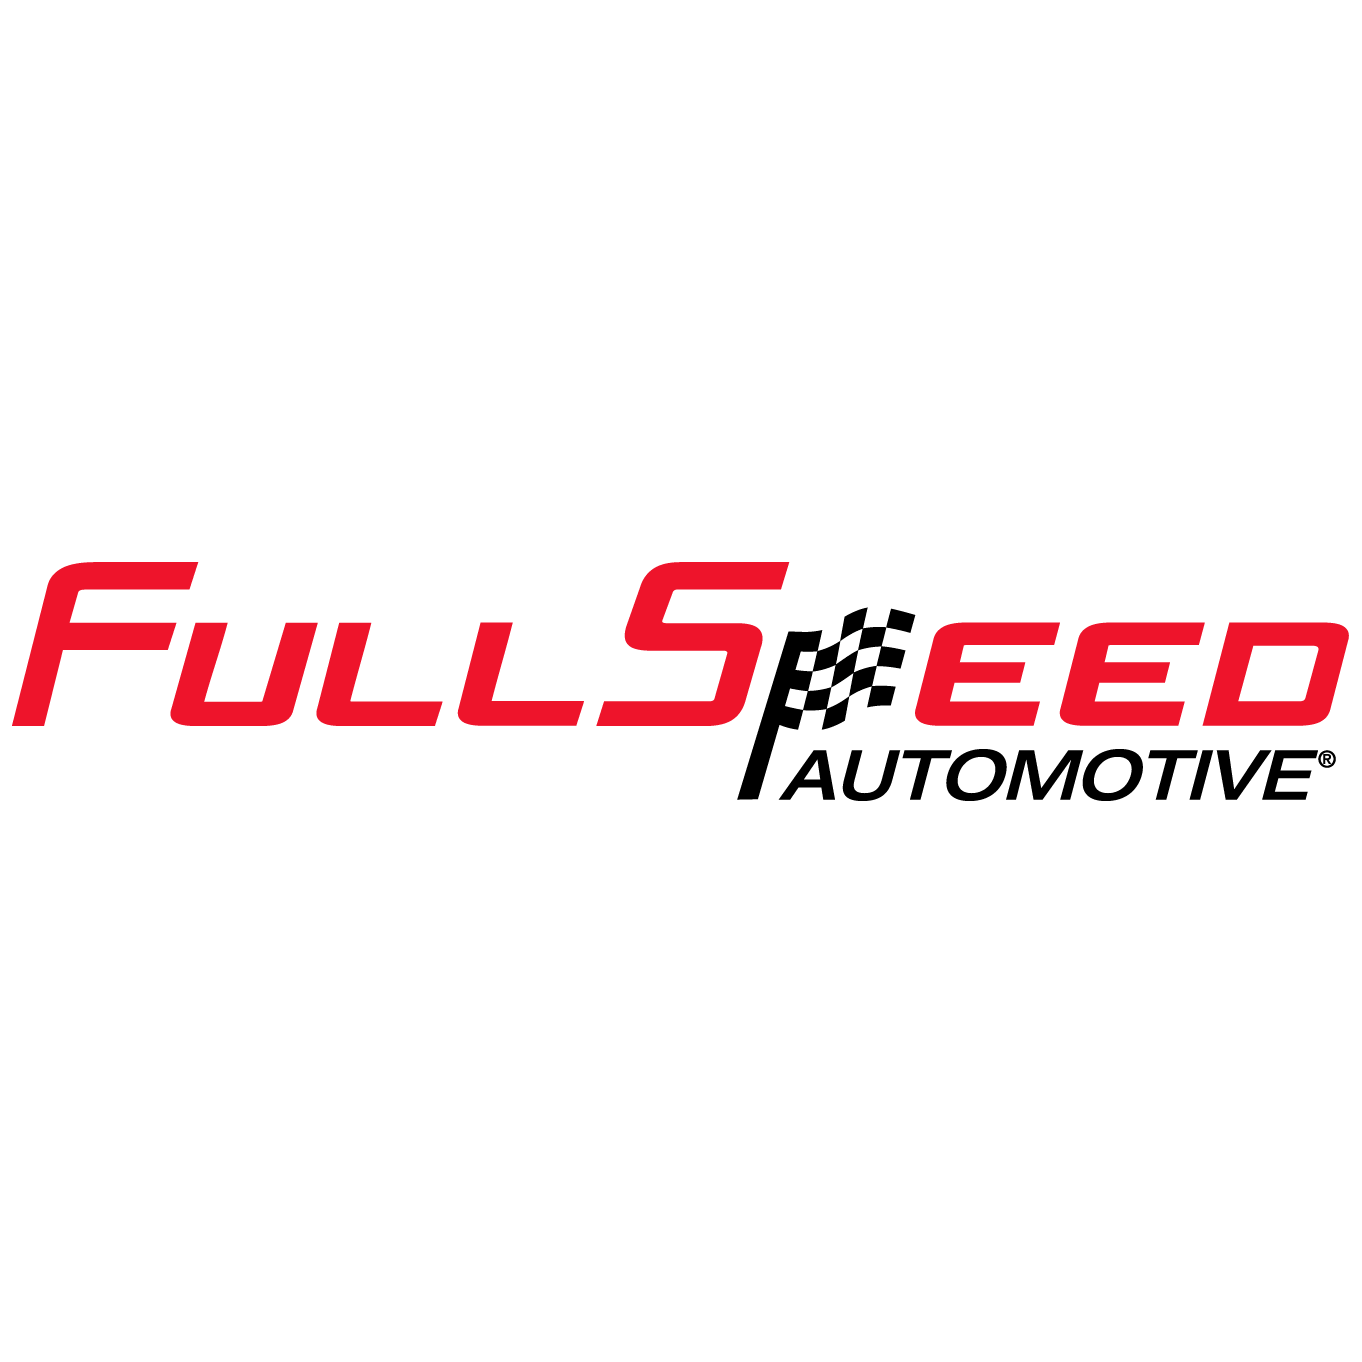 FullSpeed Automotive